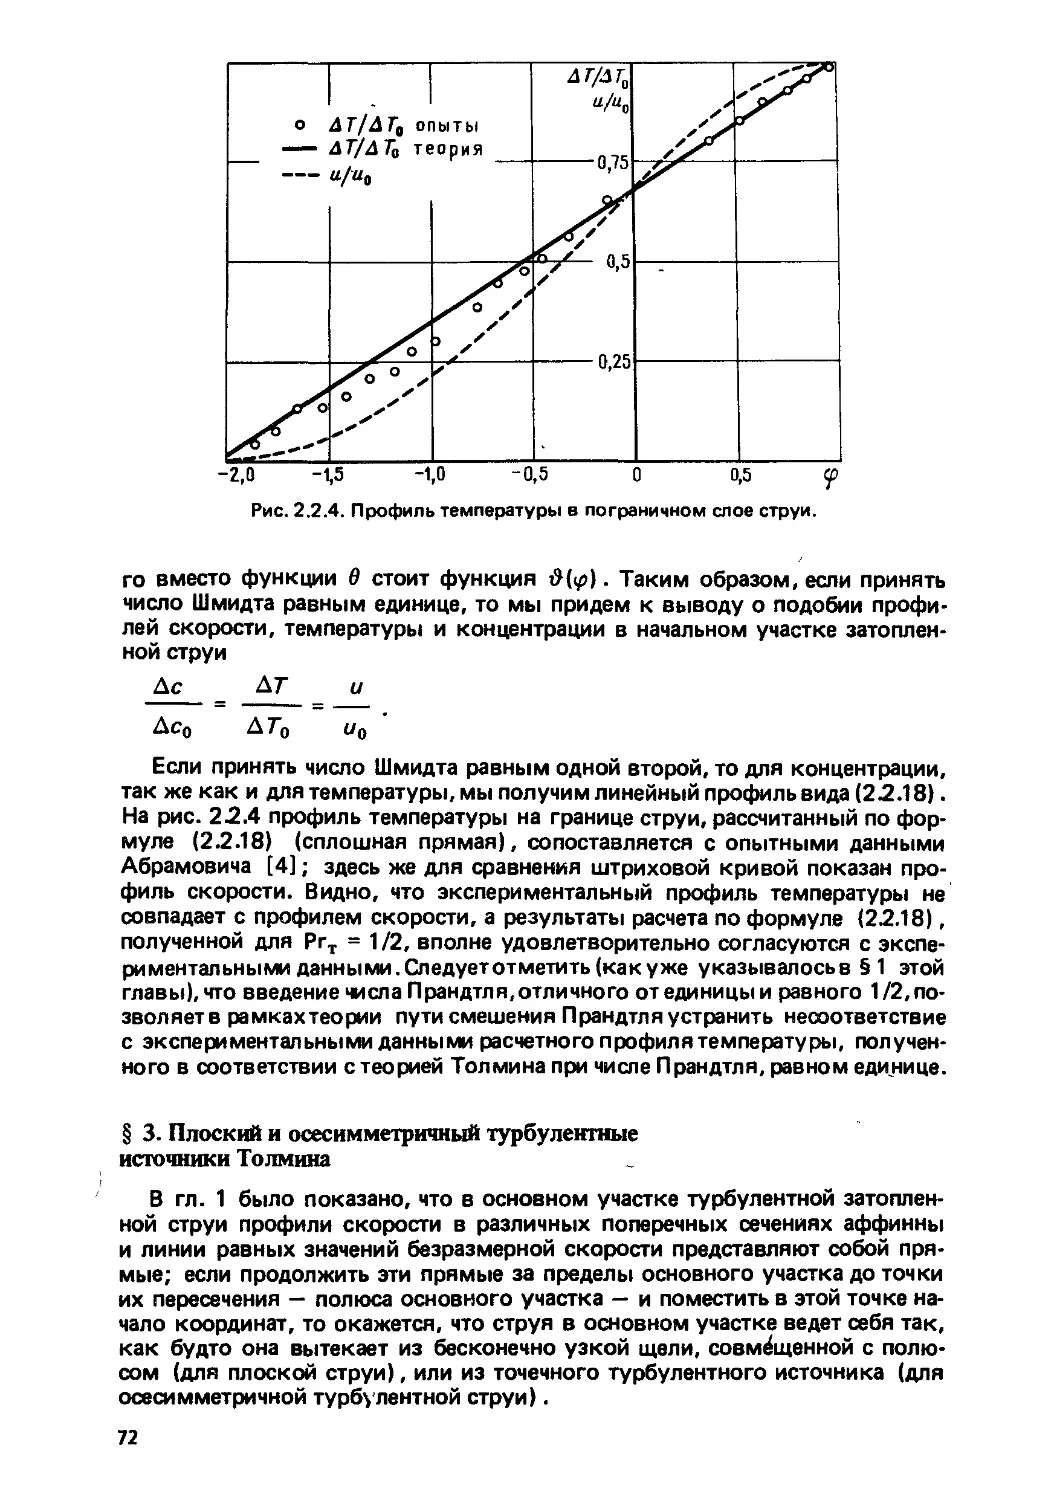 § 3. Плоский и осесимметричный турбулентные источники Толмина